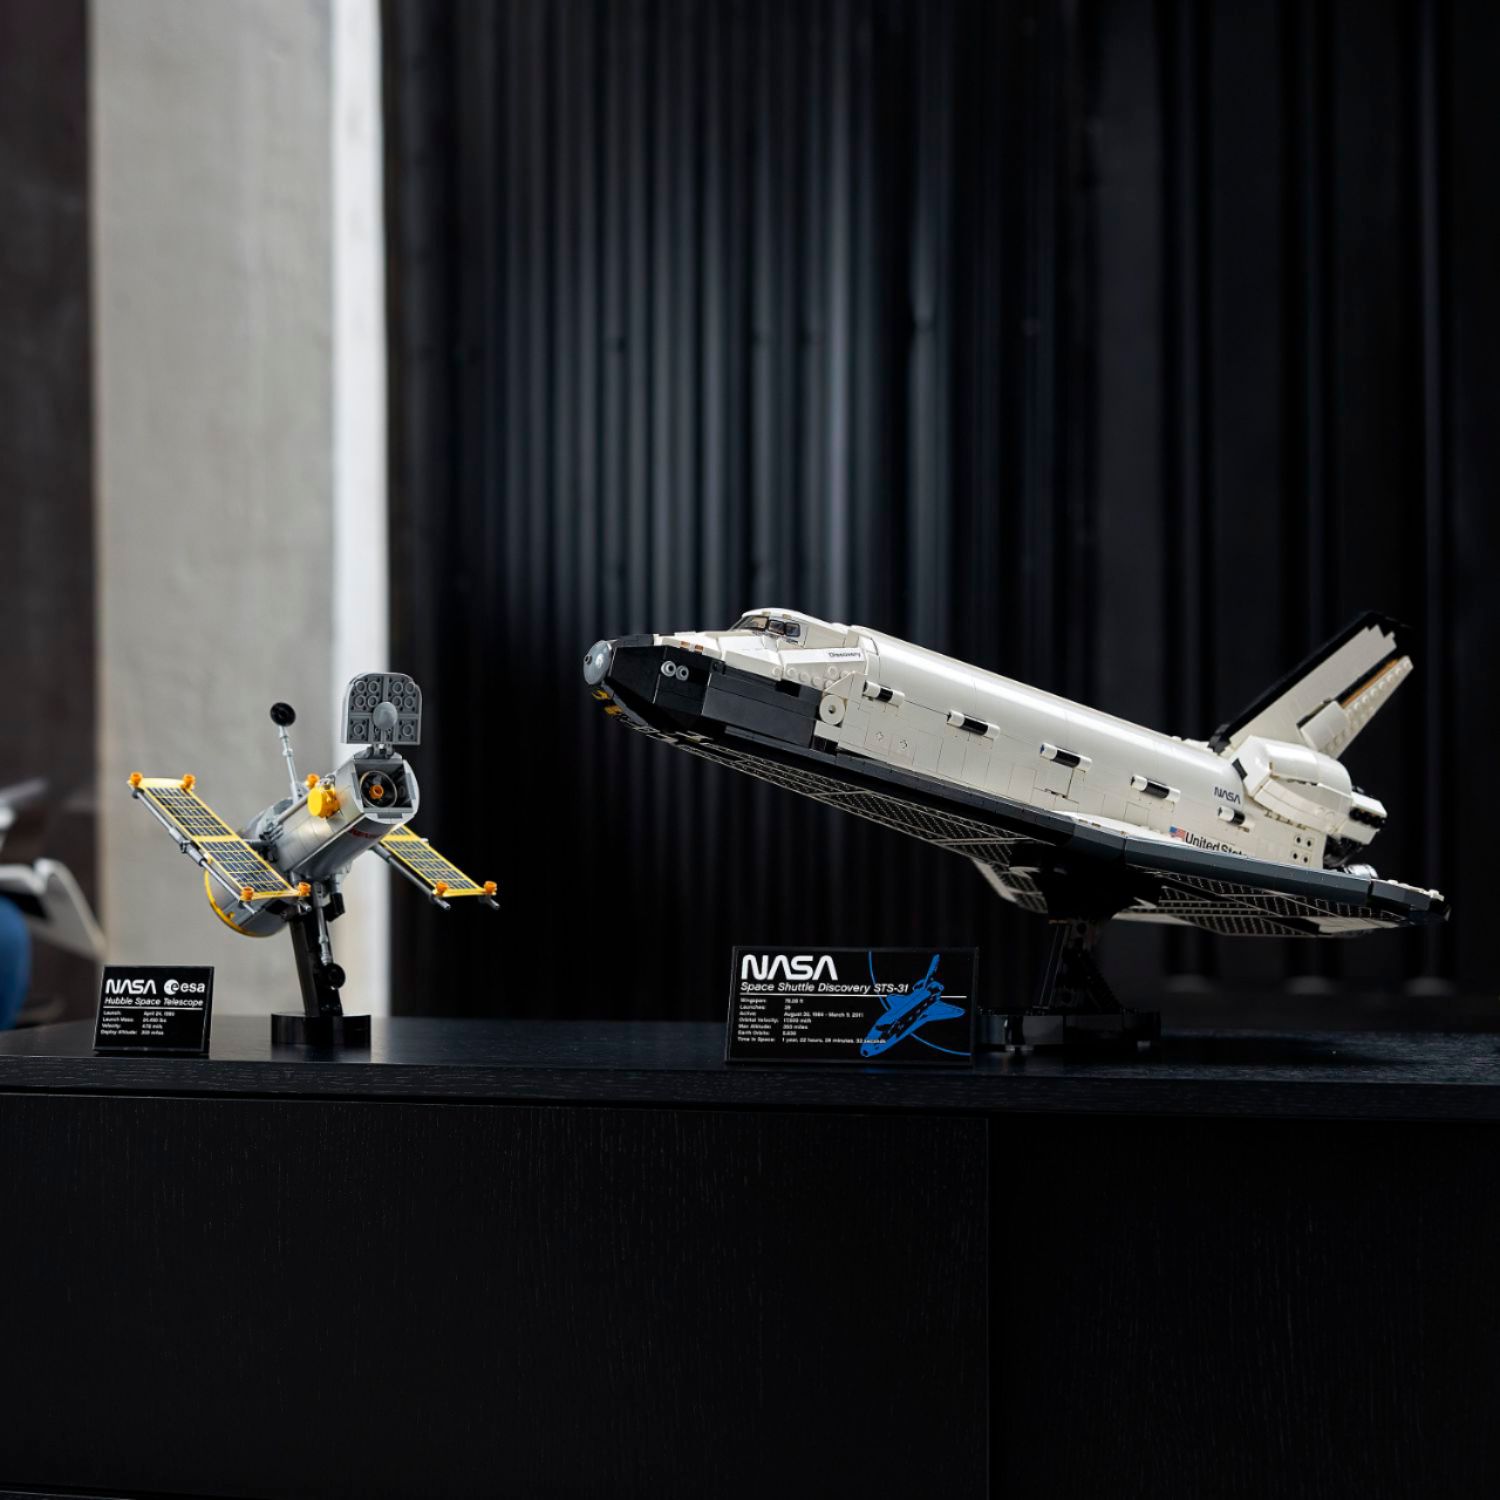 My LEGO NASA collection. : r/nasa